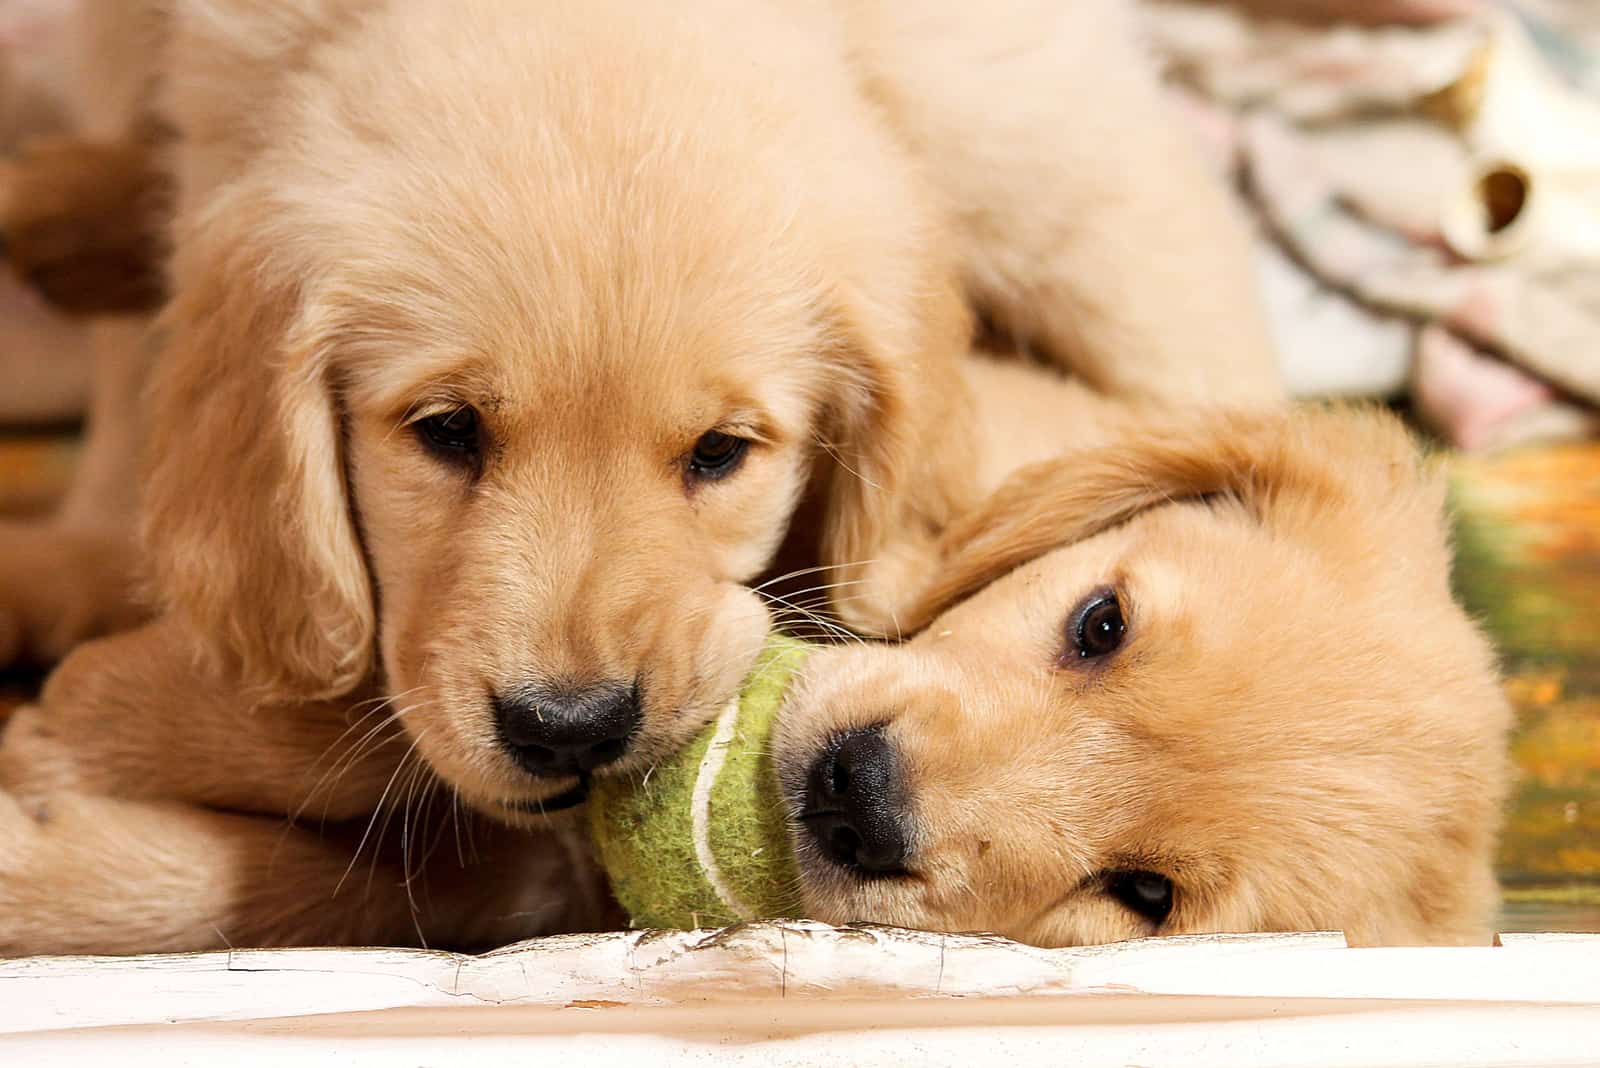 golden retriever puppies biting a tennis ball